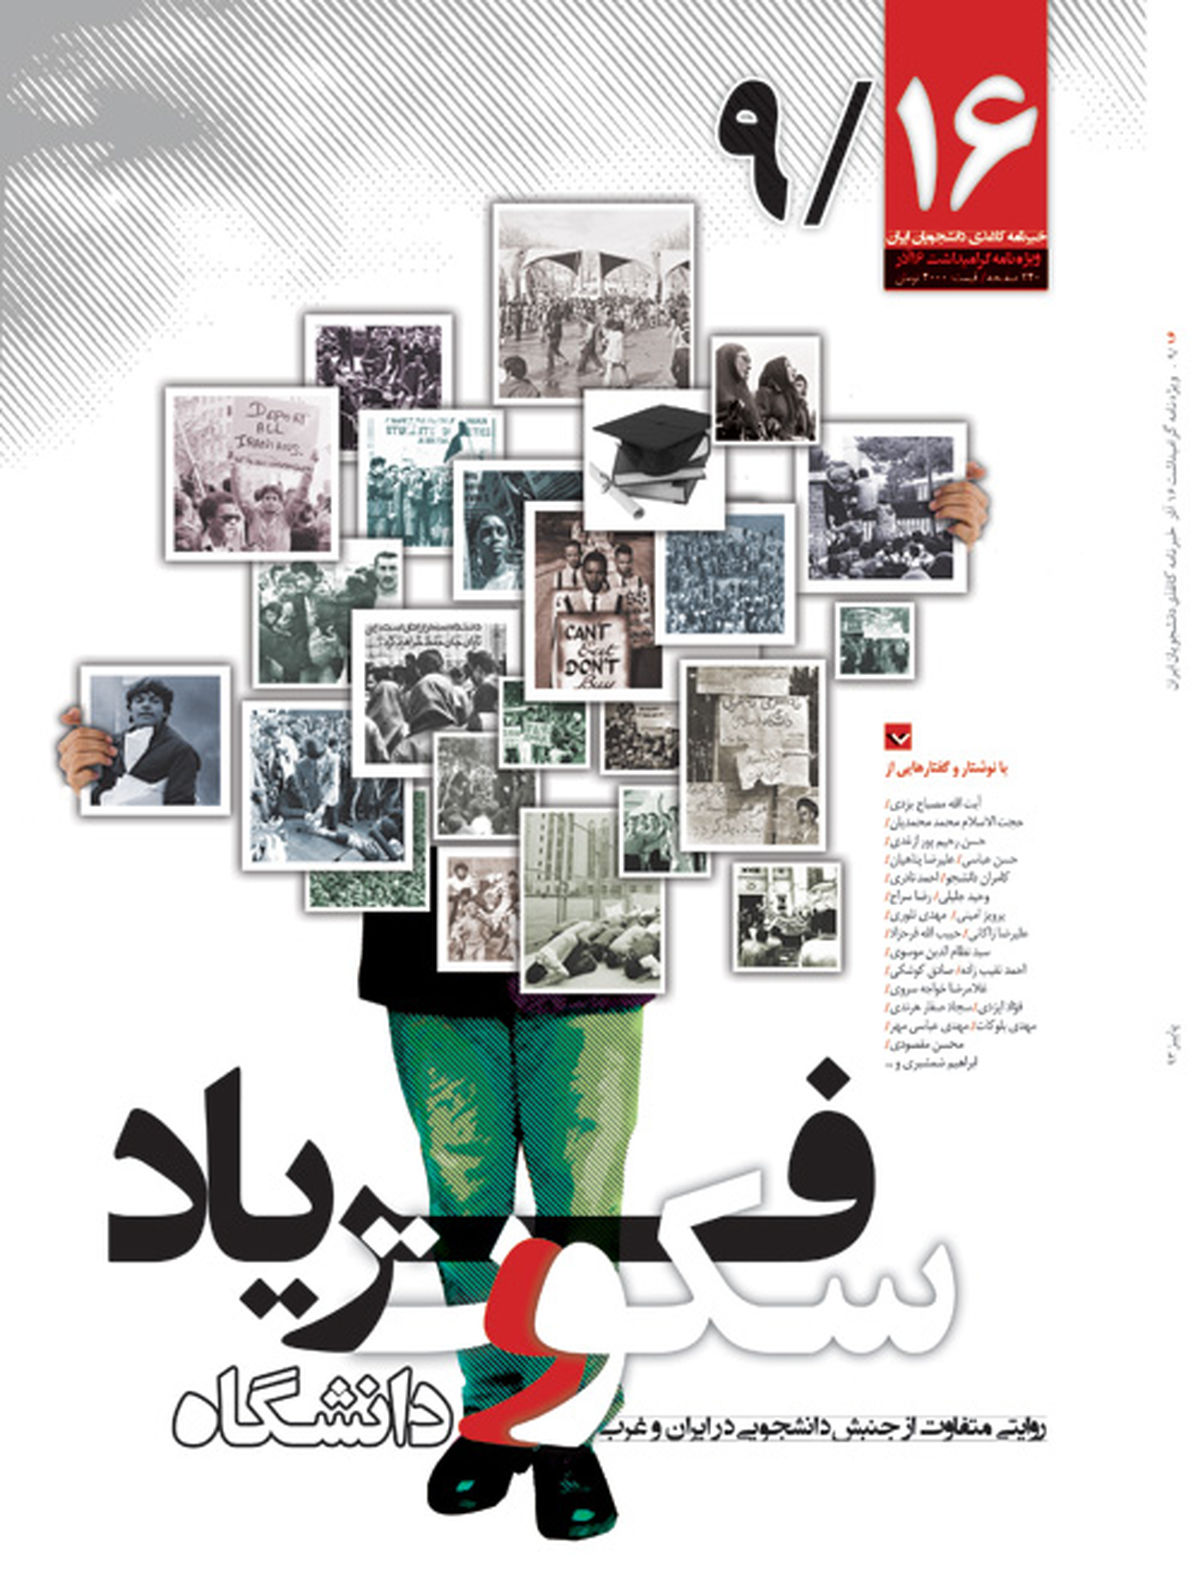 خبرنامه کاغذی دانشجویان ایران با عنوان "۹/۱۶" منتشر شد